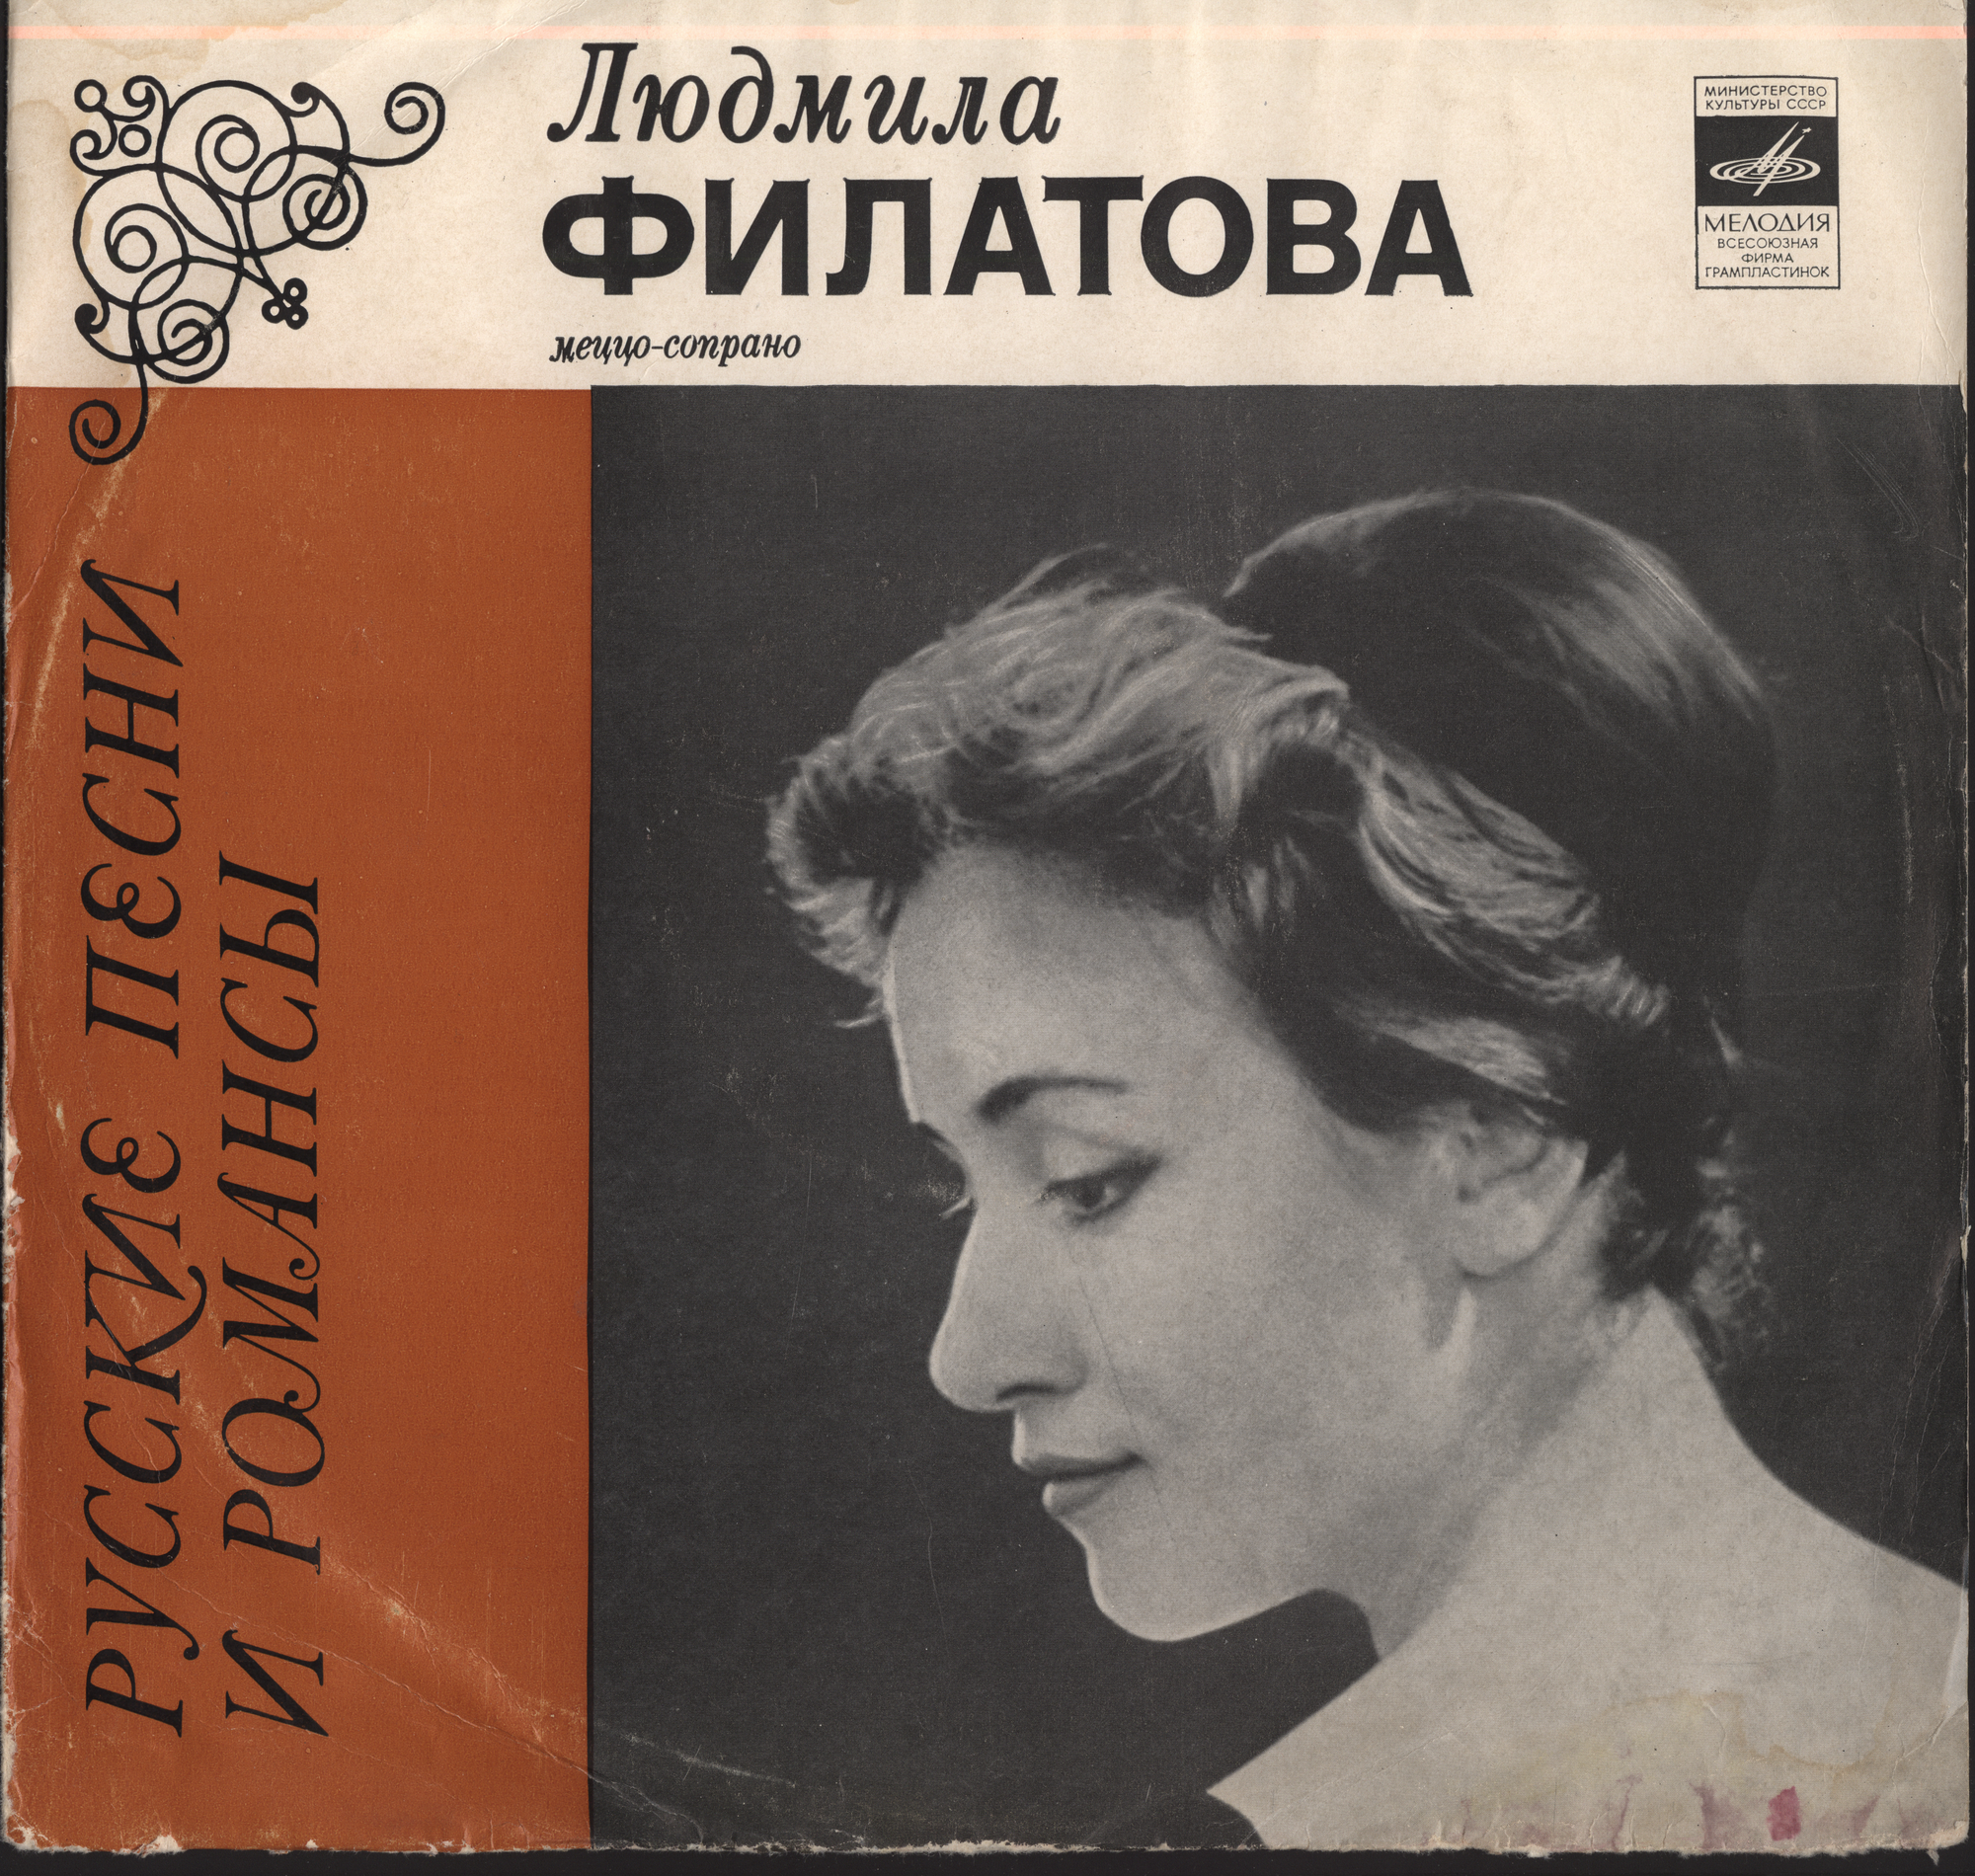 Людмила ФИЛАТОВА (меццо-сопрано). «Русские песни и романсы»